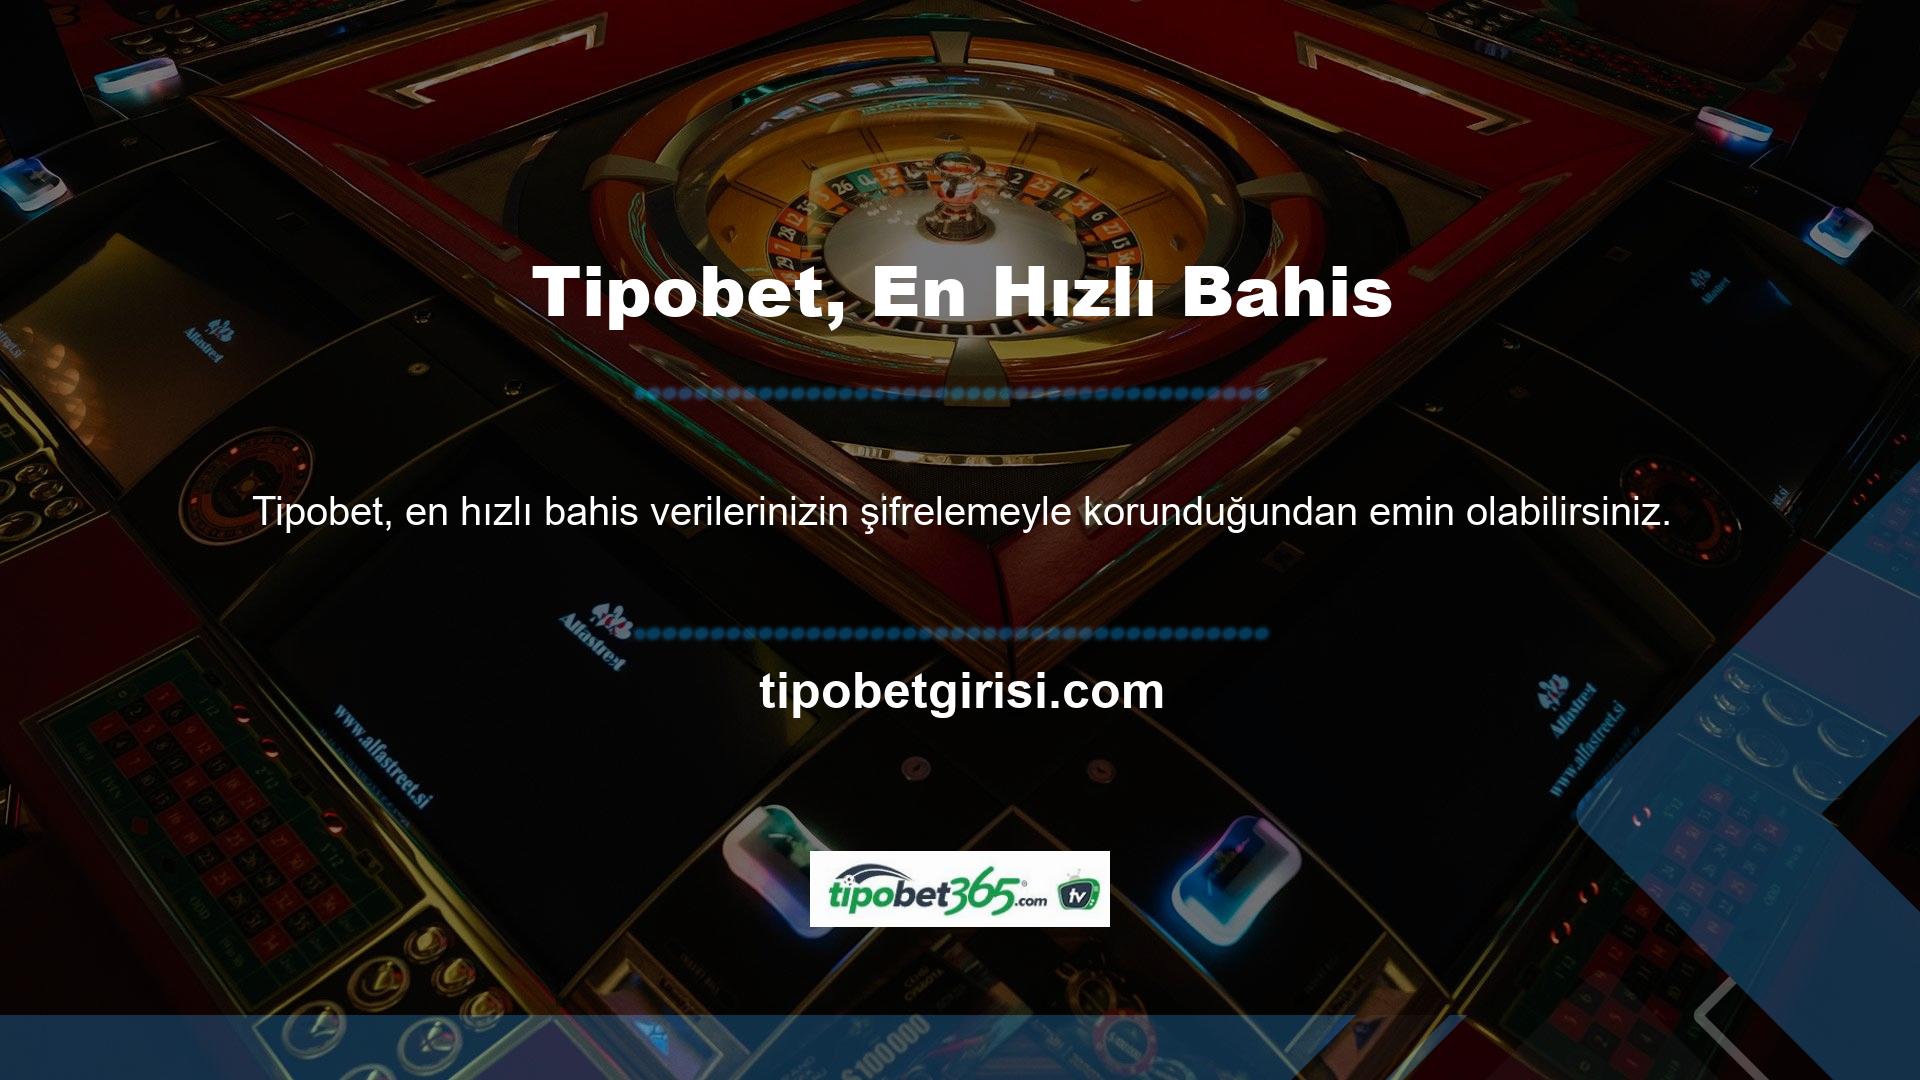 Tipobet, en hızlı bahis yöntemlerini kullanarak para kazanabileceğiniz harika bir bahis sitesidir